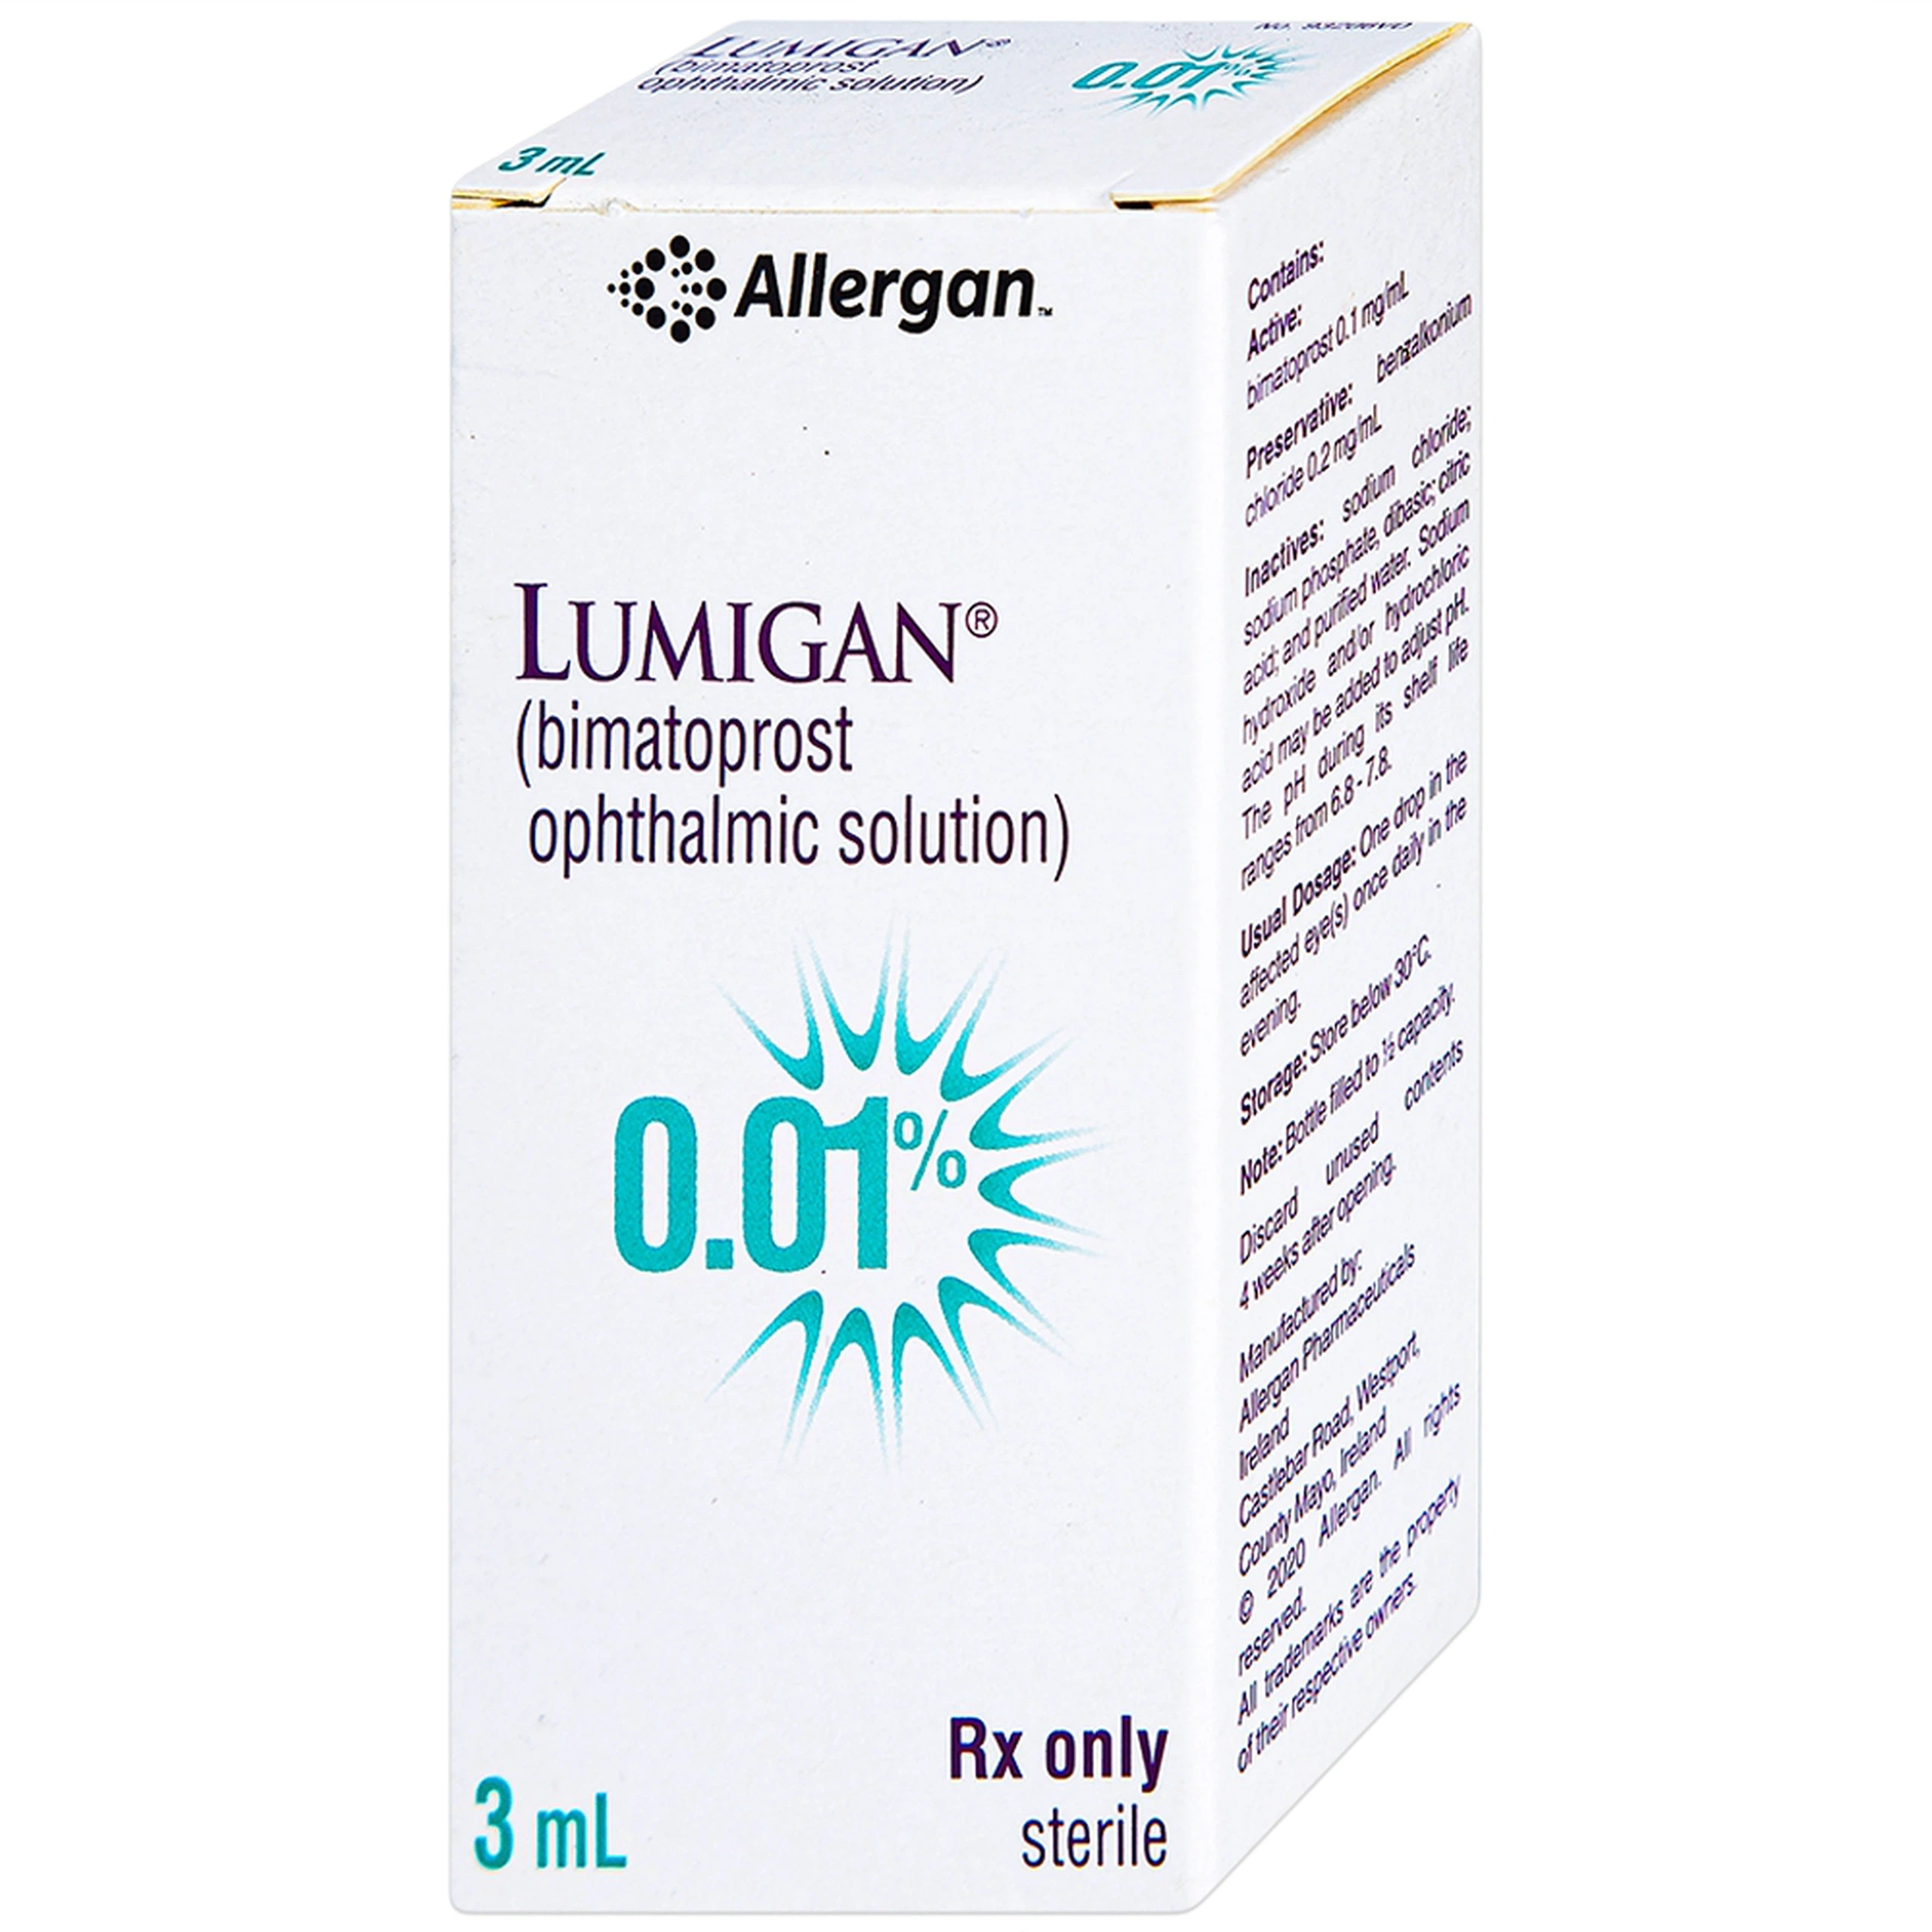 Thuốc nhỏ mắt Lumigan 0.01% Allergan giảm tăng áp suất nội nhãn (3ml)